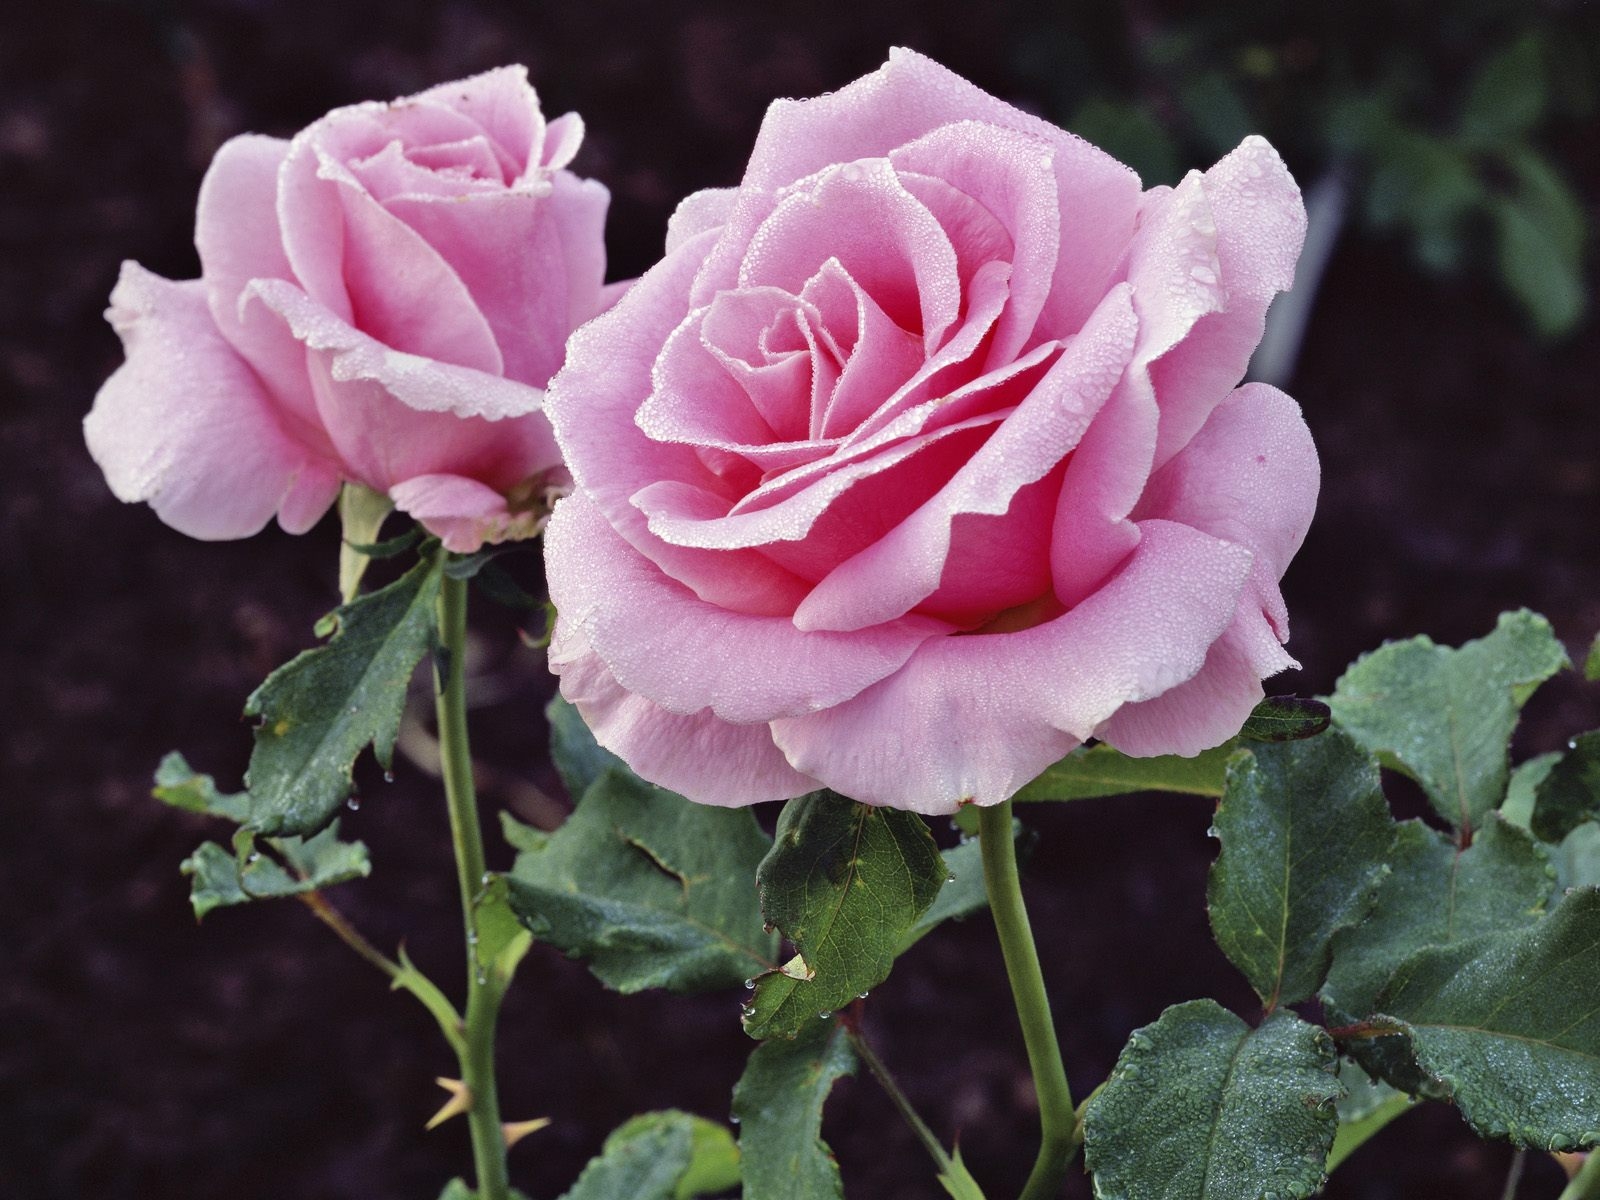 Fonds d'ecran Roses Fleurs télécharger photo